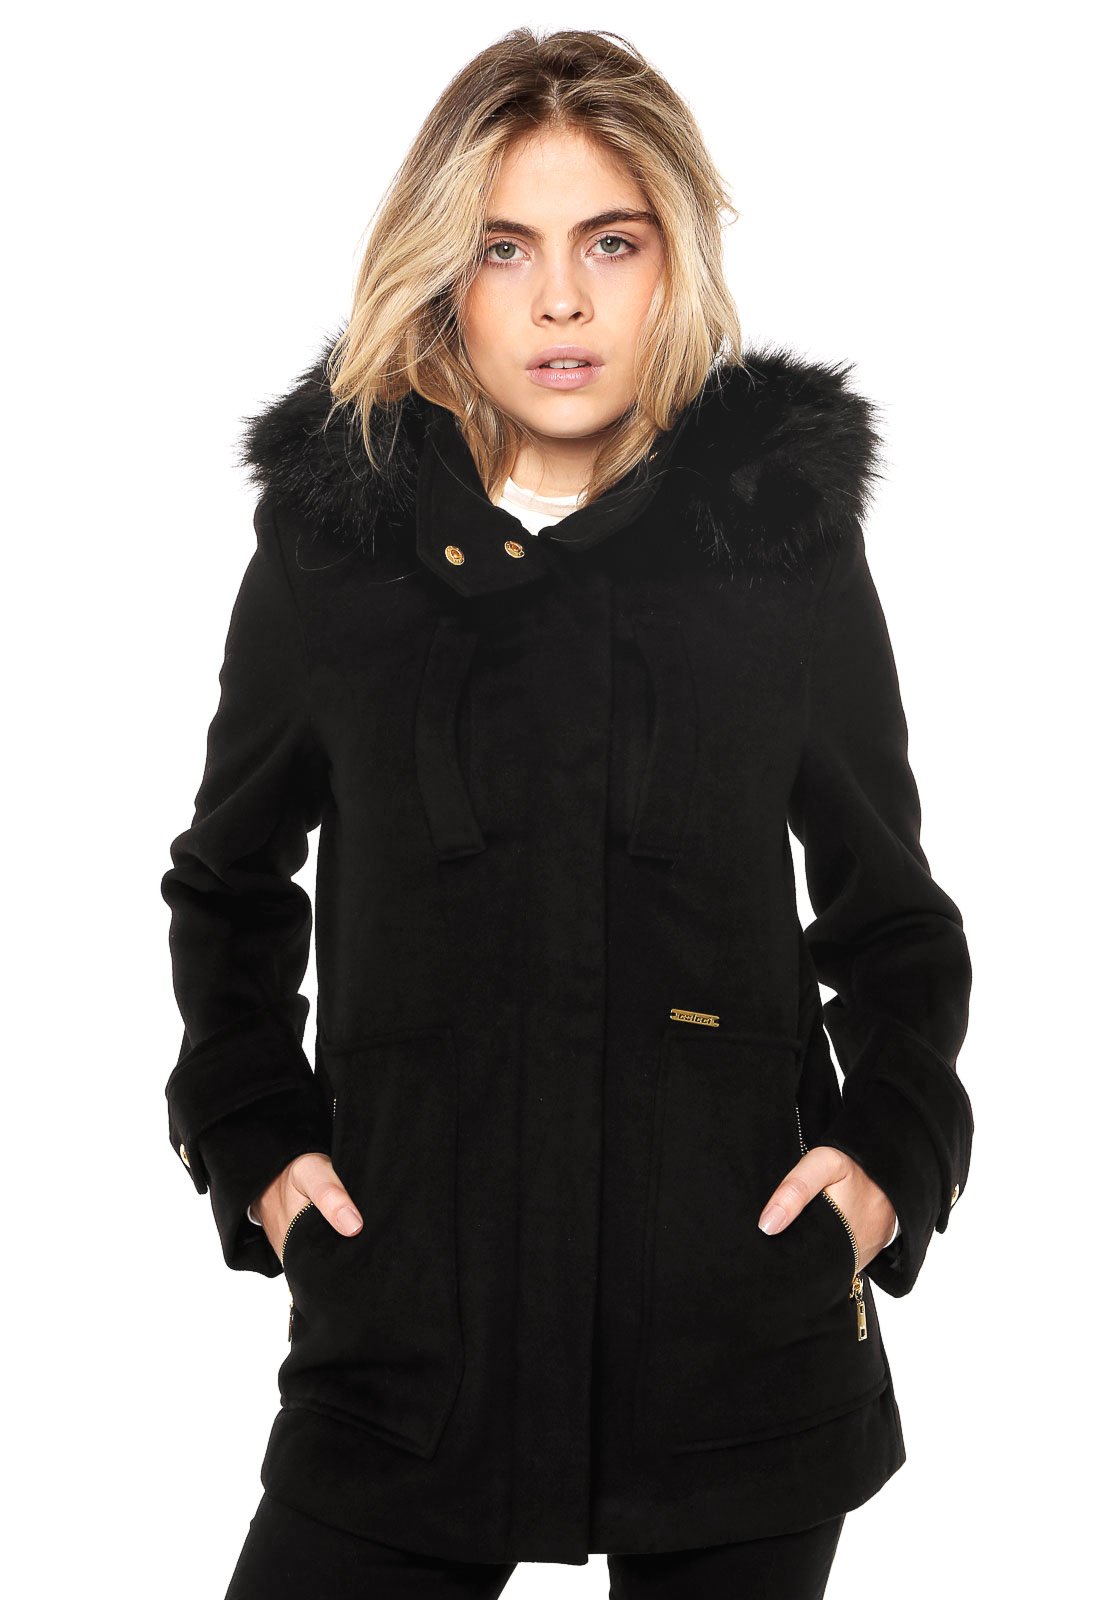 casaco preto feminino com capuz